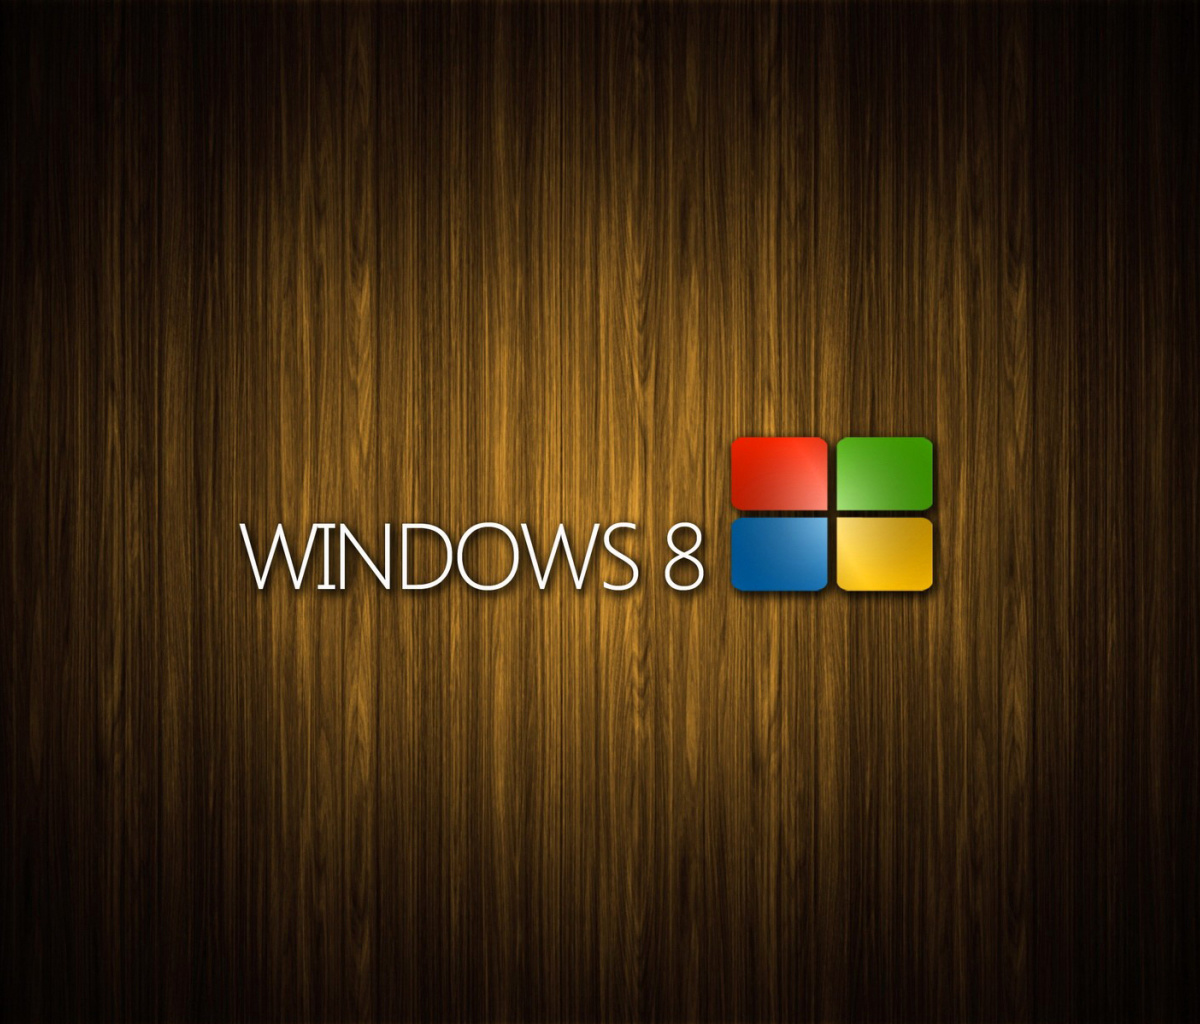 Обои Windows 8 Wooden Emblem 1200x1024